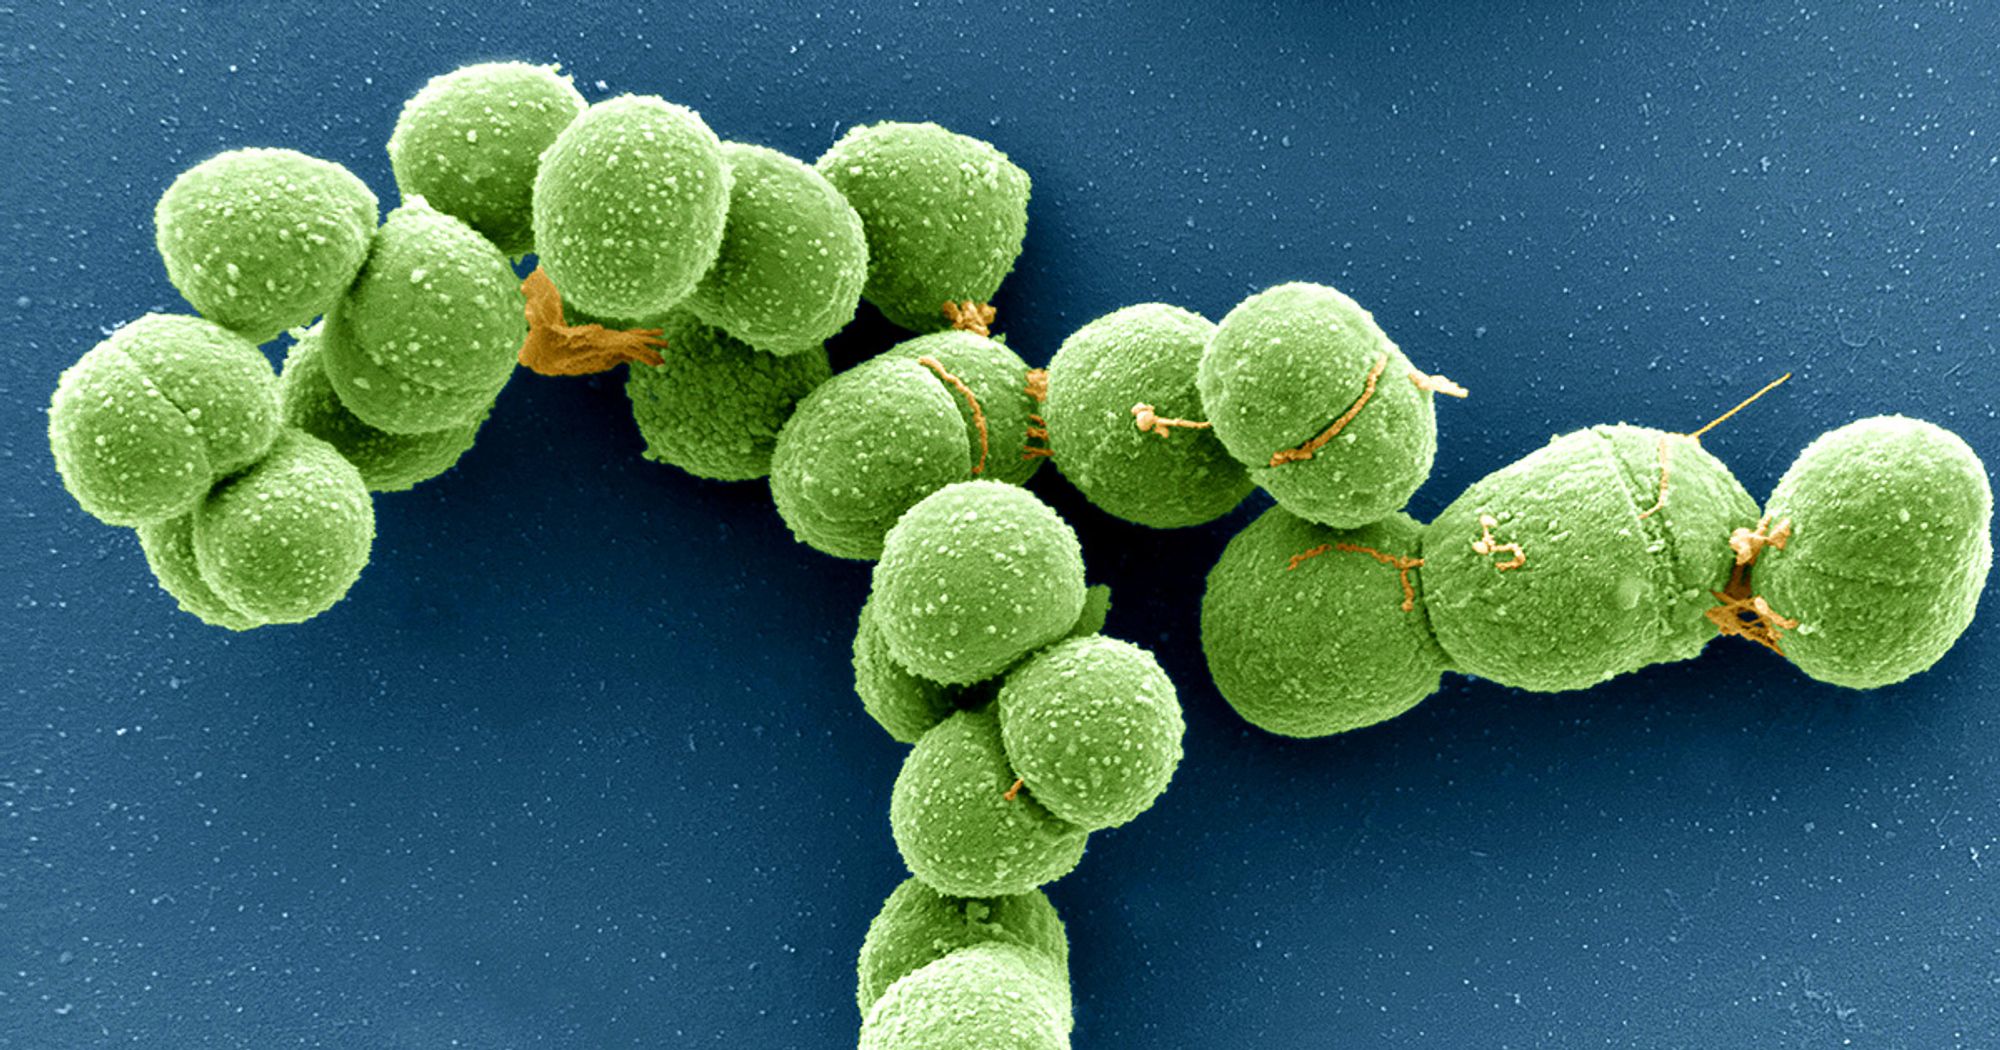 Plasmid, Virus or Other? DNA 'Borgs' Blur Boundaries. | Quanta Magazine